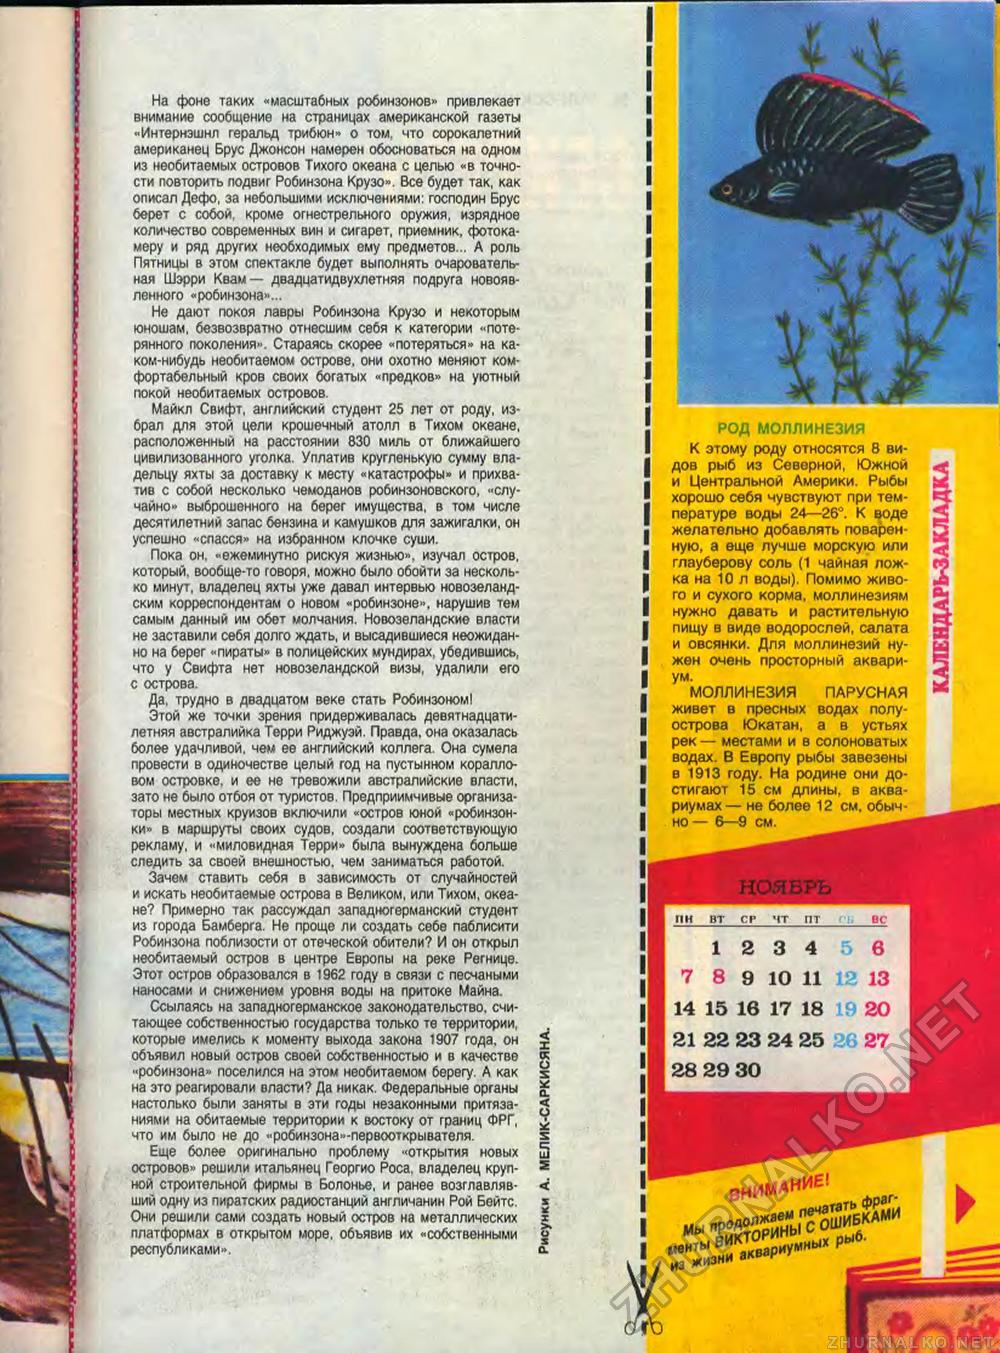  1988-11,  59